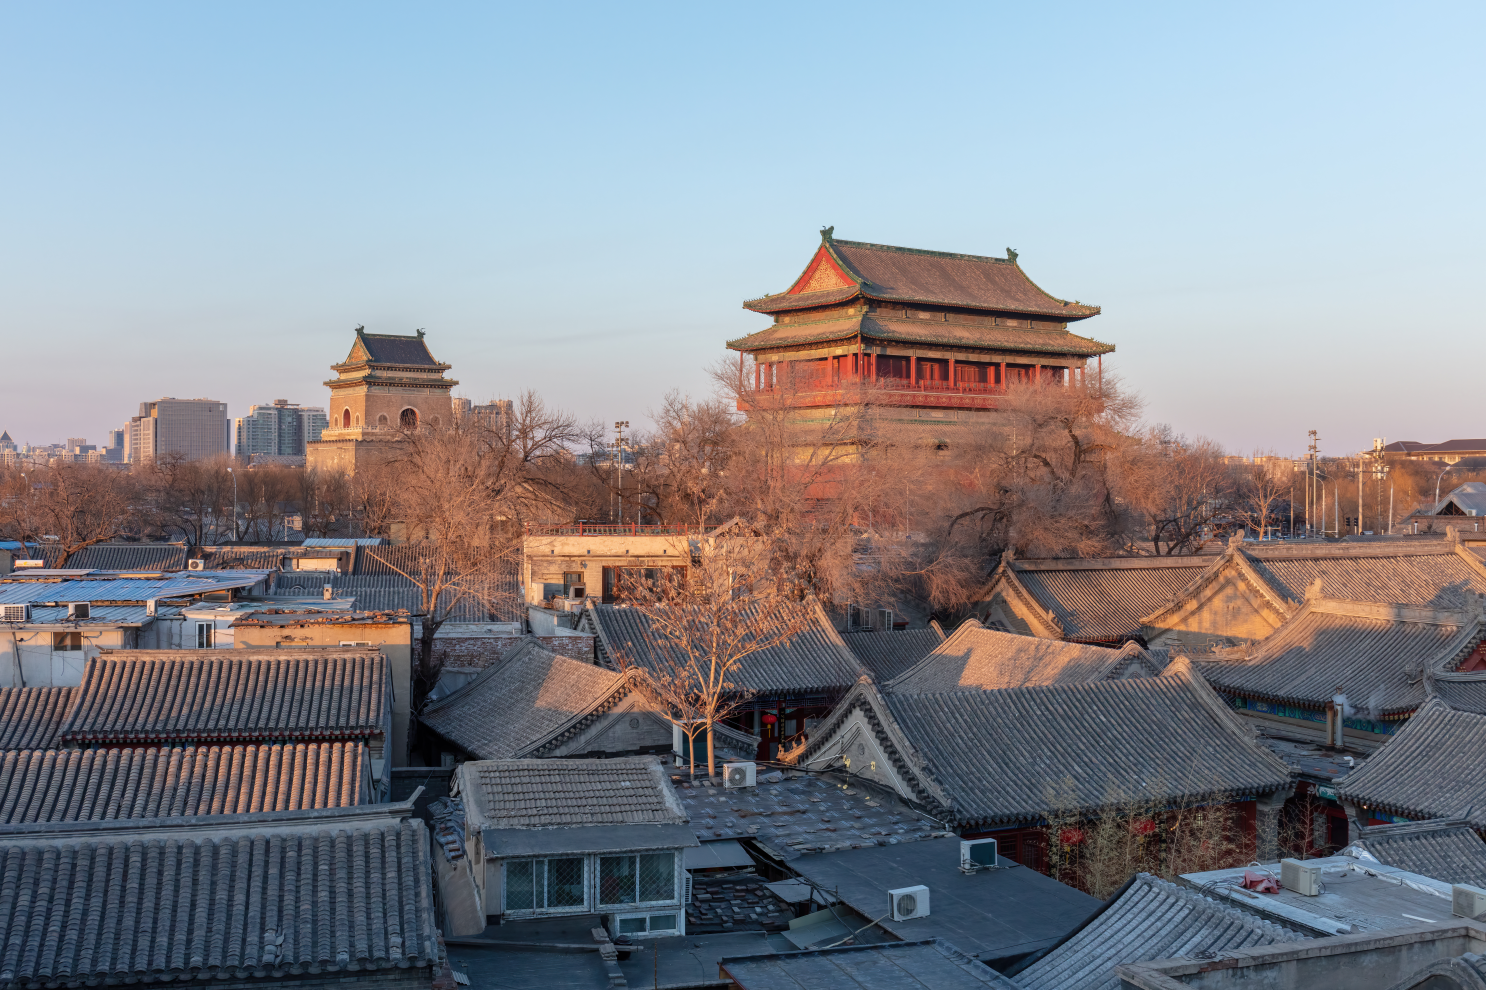 2021年2月17日,北京钟鼓楼与烟袋斜街风景.人们视觉 图